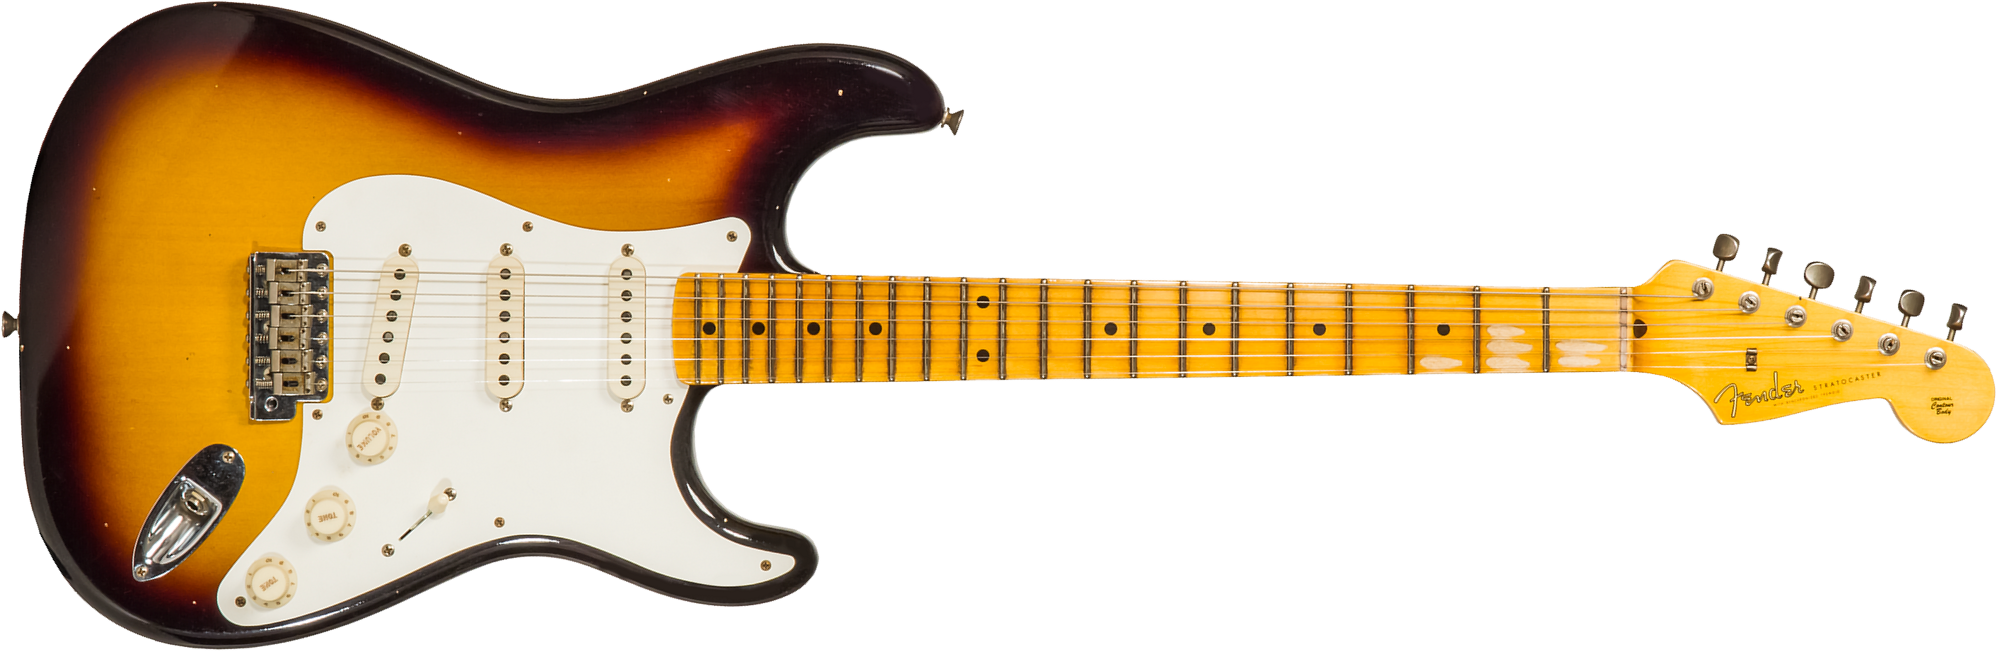 Fender Custom Shop Strat 1956 3s Trem Mn #cz571884 - Journeyman Relic Aged 2-color Sunburst - Guitarra eléctrica con forma de str. - Main picture